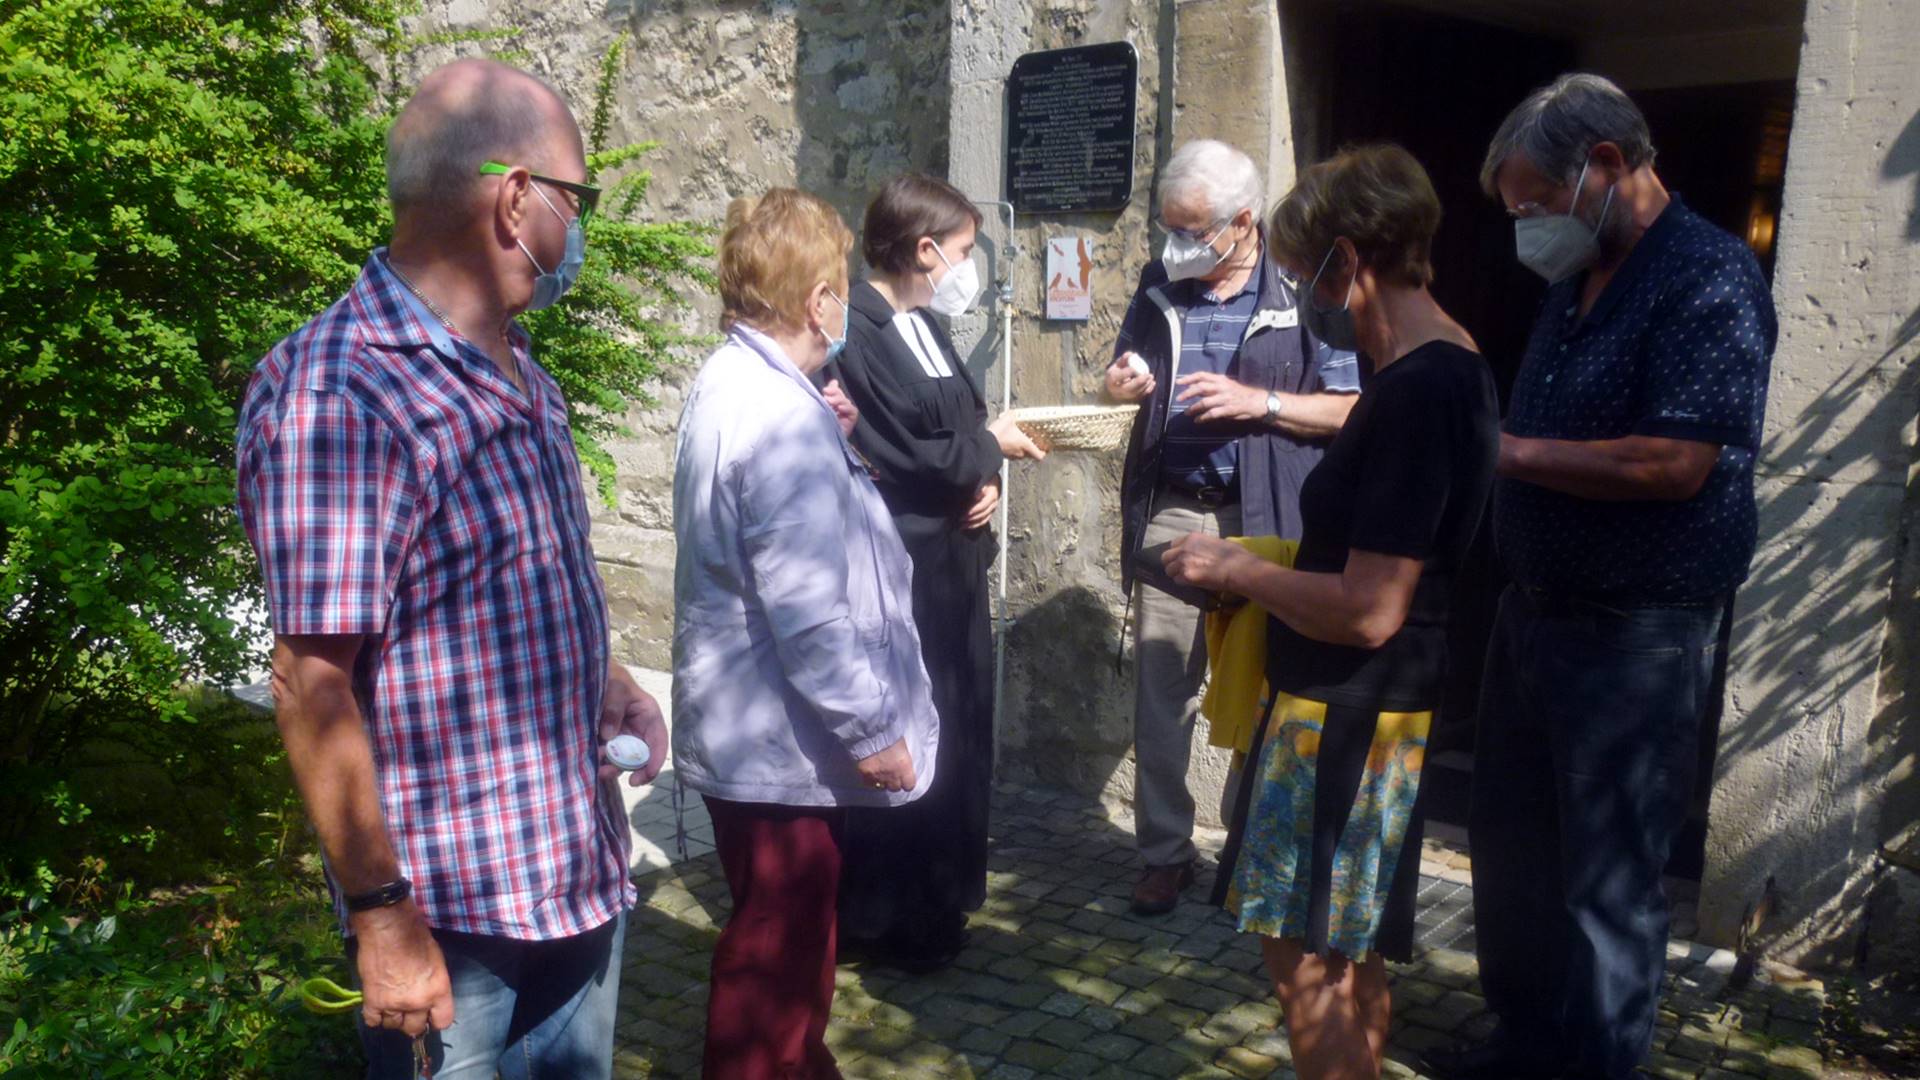 Vor dem Eingang zur Kirche stehen sechs Personen. Die Pfarrerin hält ein Körbchen in der Hand aus dem sich die anderen Personen kleine Cremetuben nehmen.